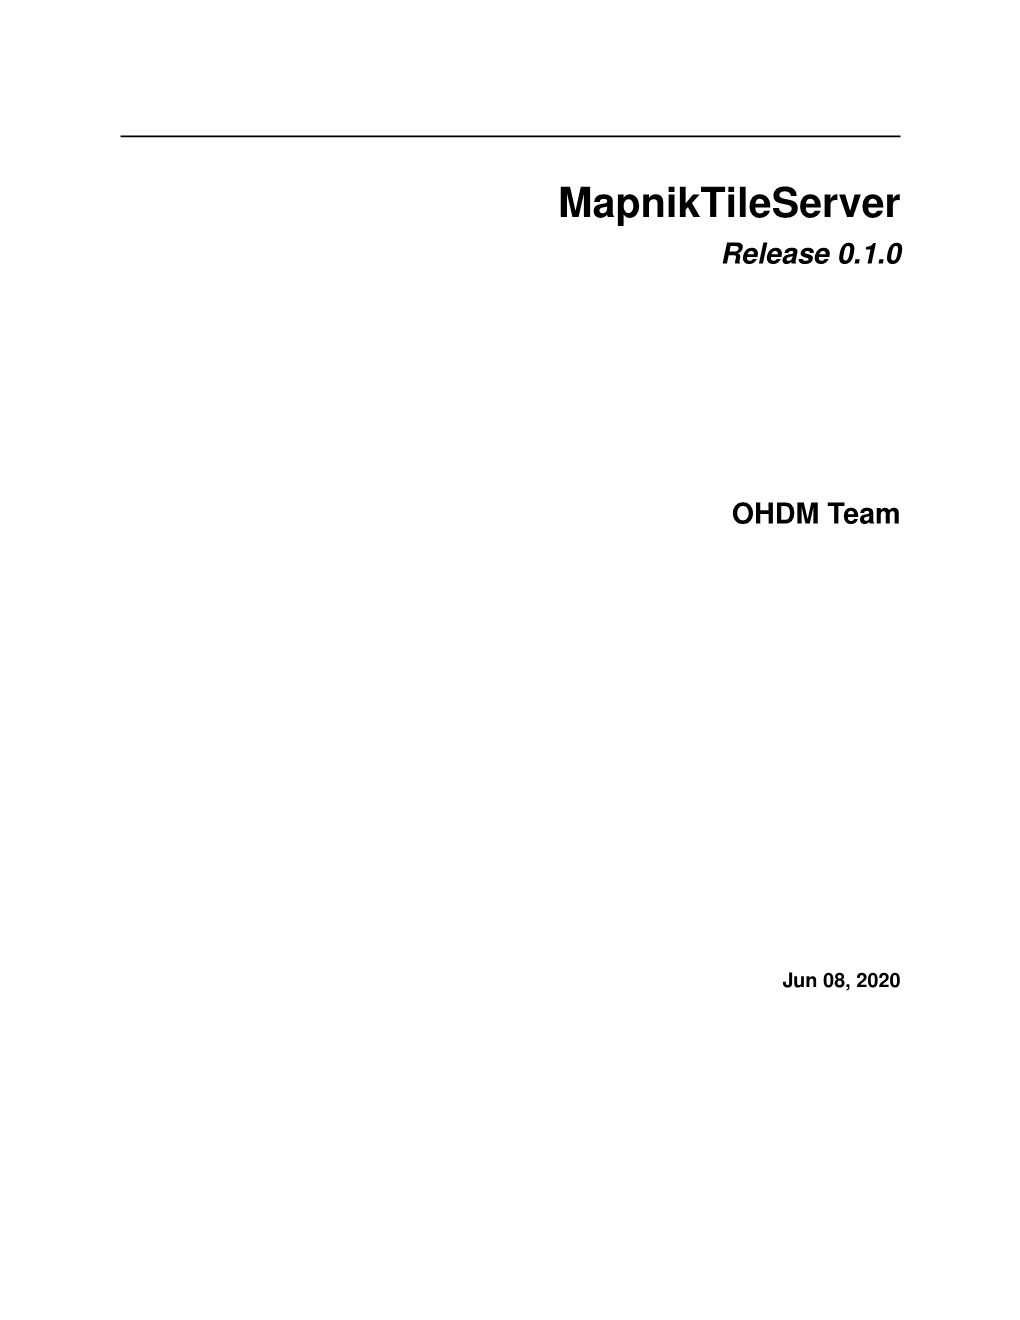 Mapniktileserver's Documentation!